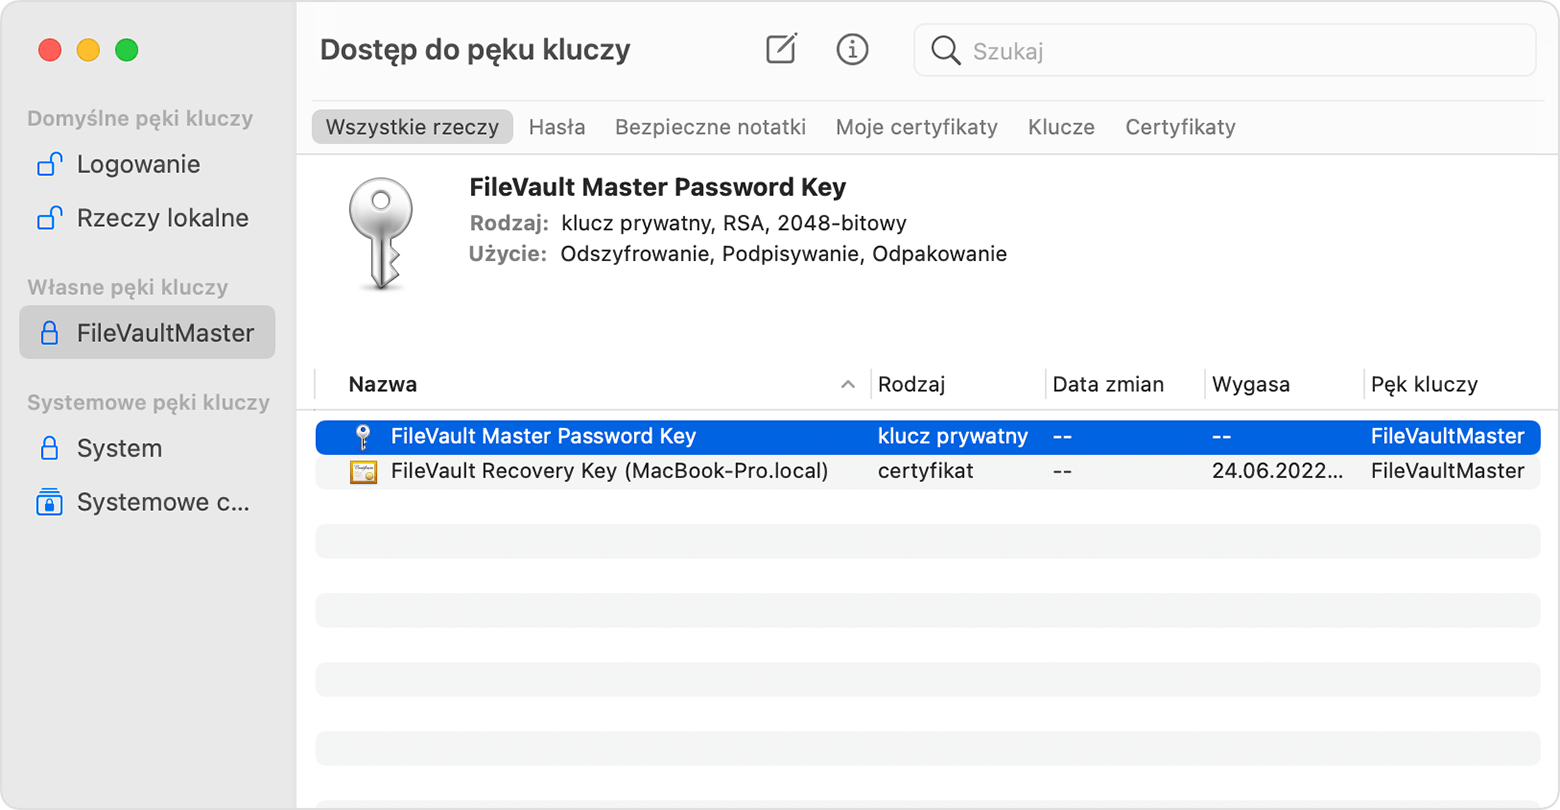 Aplikacja Dostęp do pęku kluczy z zaznaczoną nazwą FileVault Master Password Key